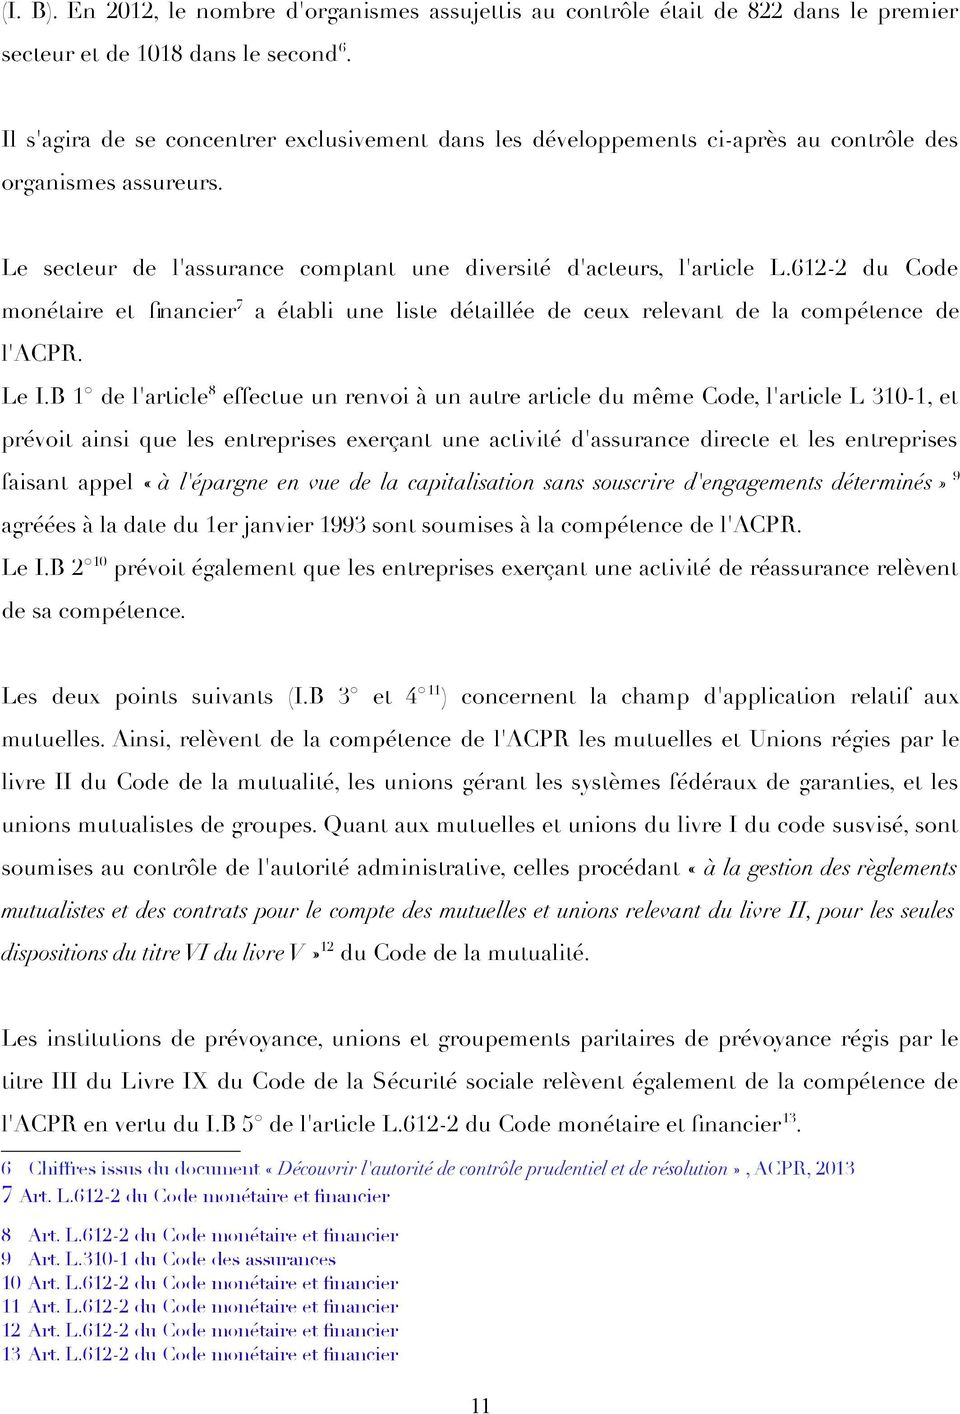 612-2 du Code monétaire et fnancier 7 a établi une liste détaillée de ceux relevant de la compétence de l'acpr. Le I.